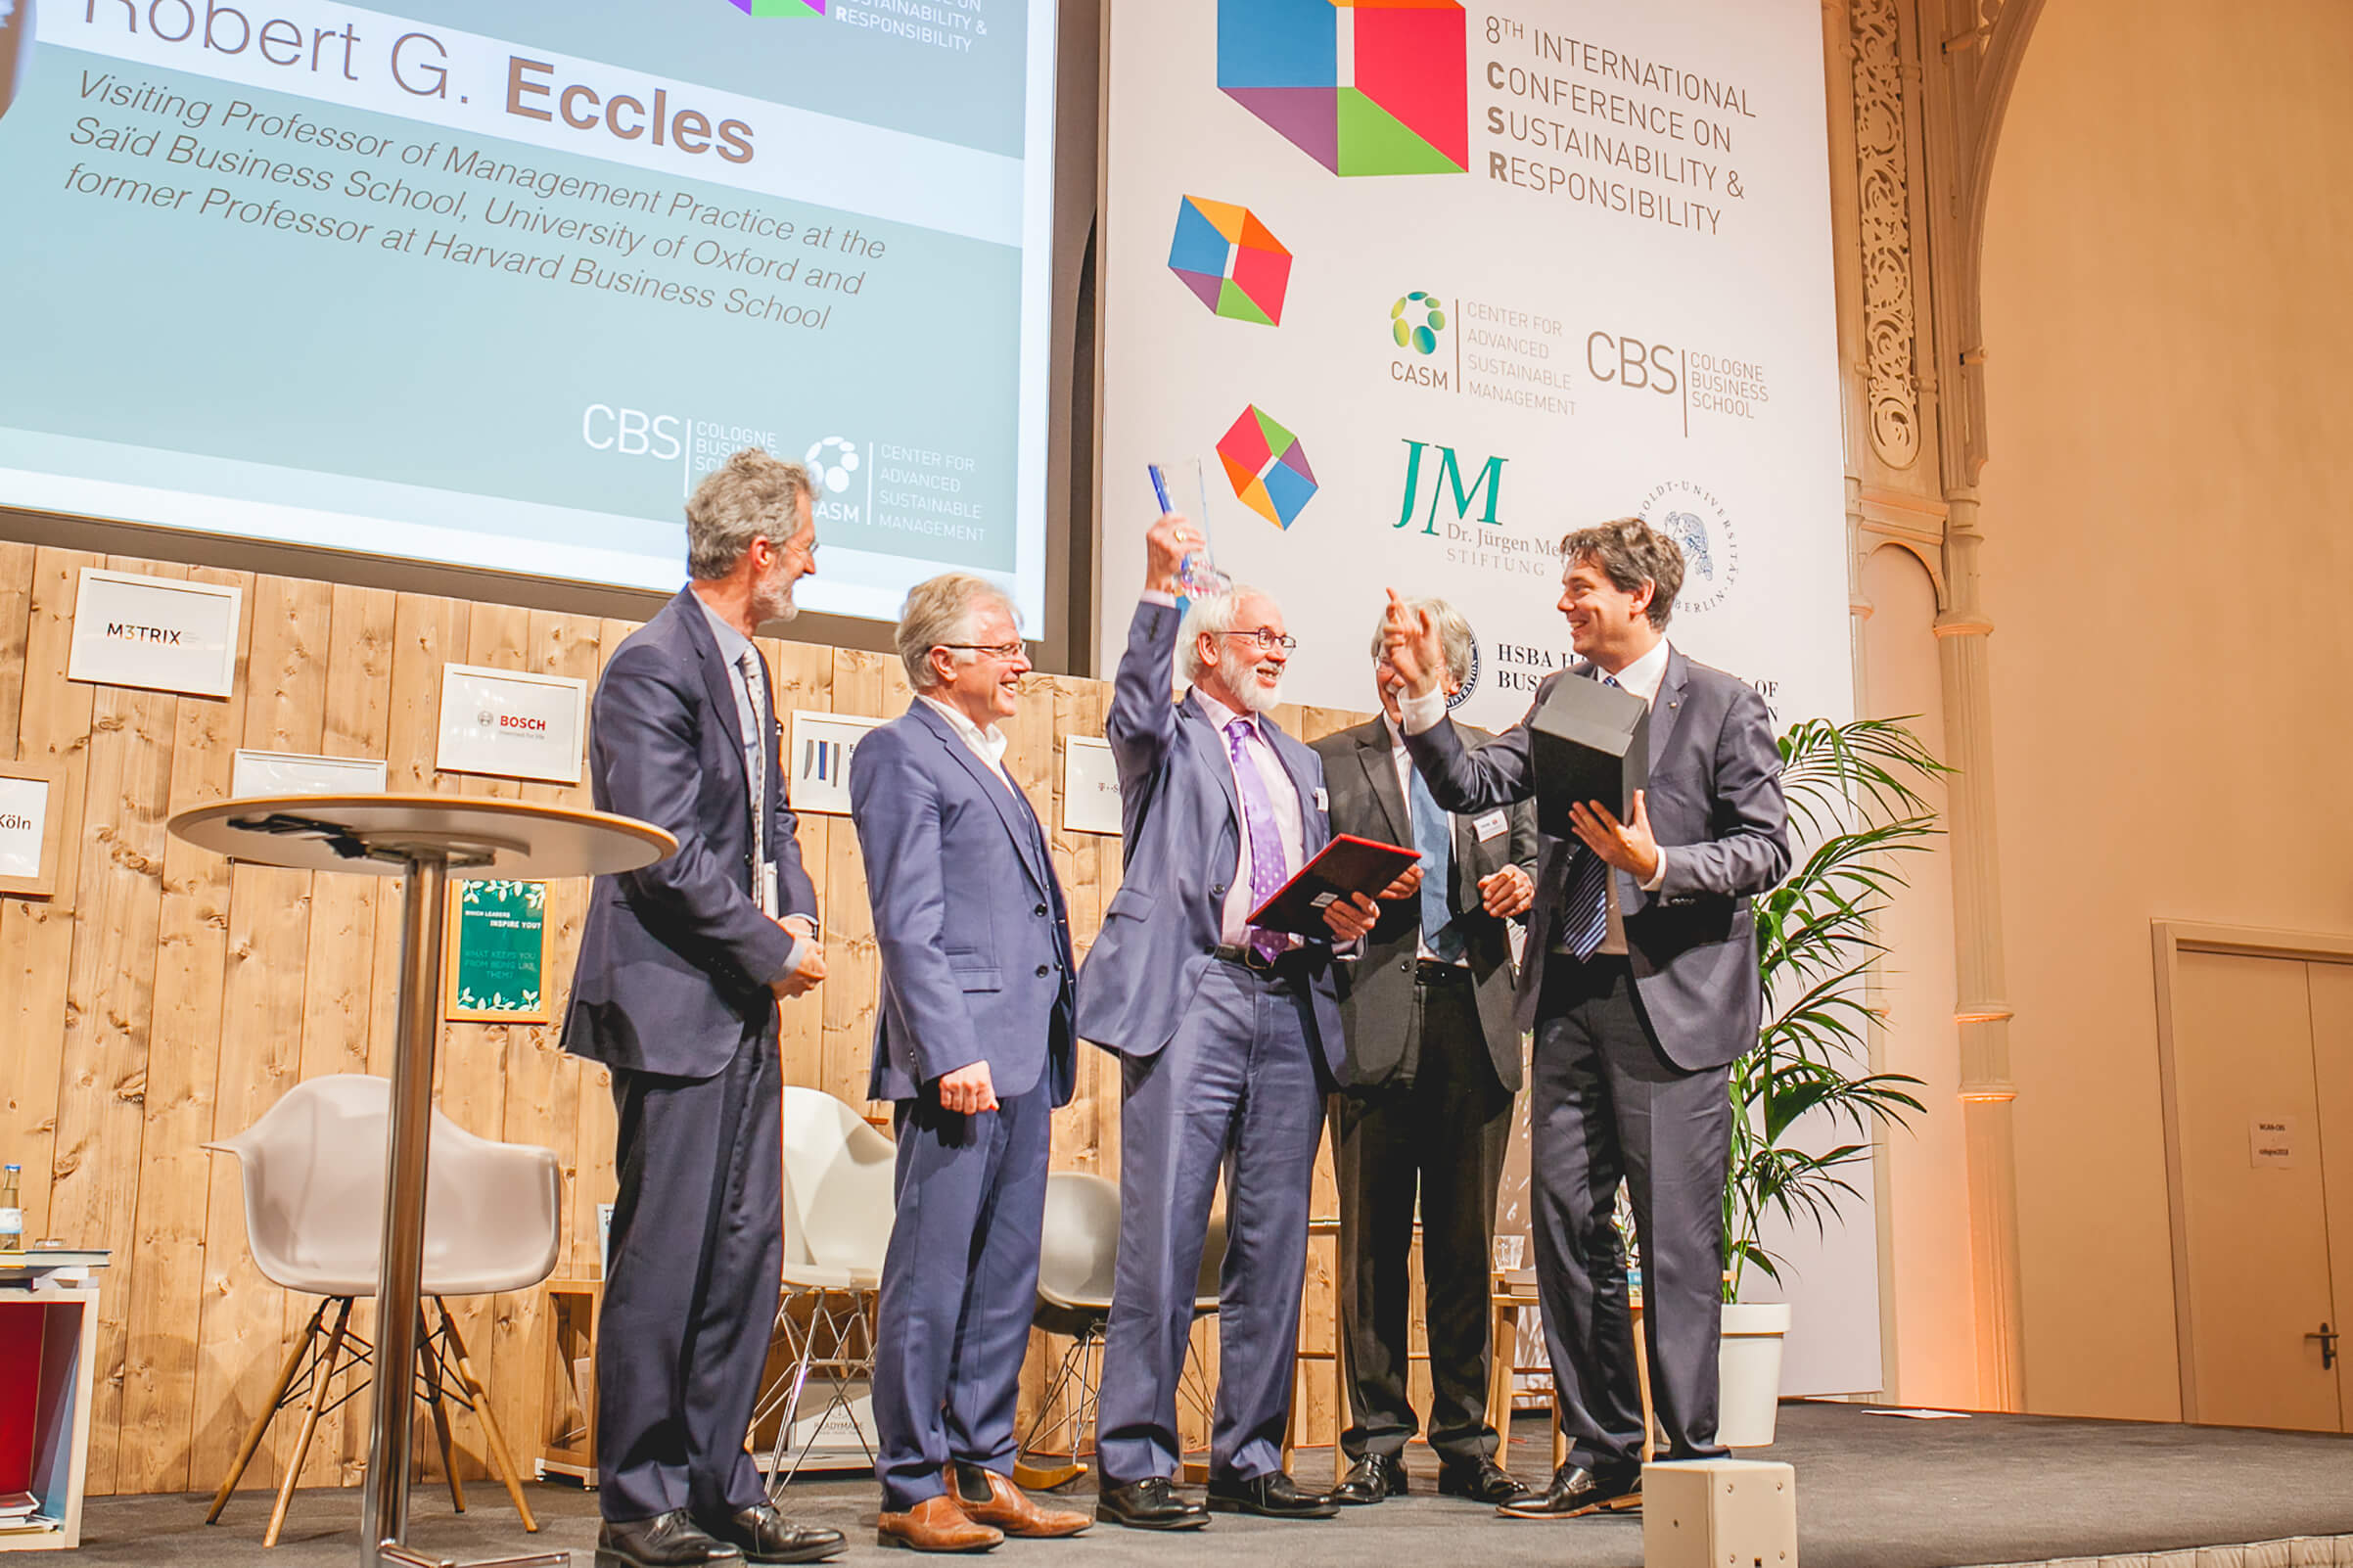 Bob Eccles receives CSR award